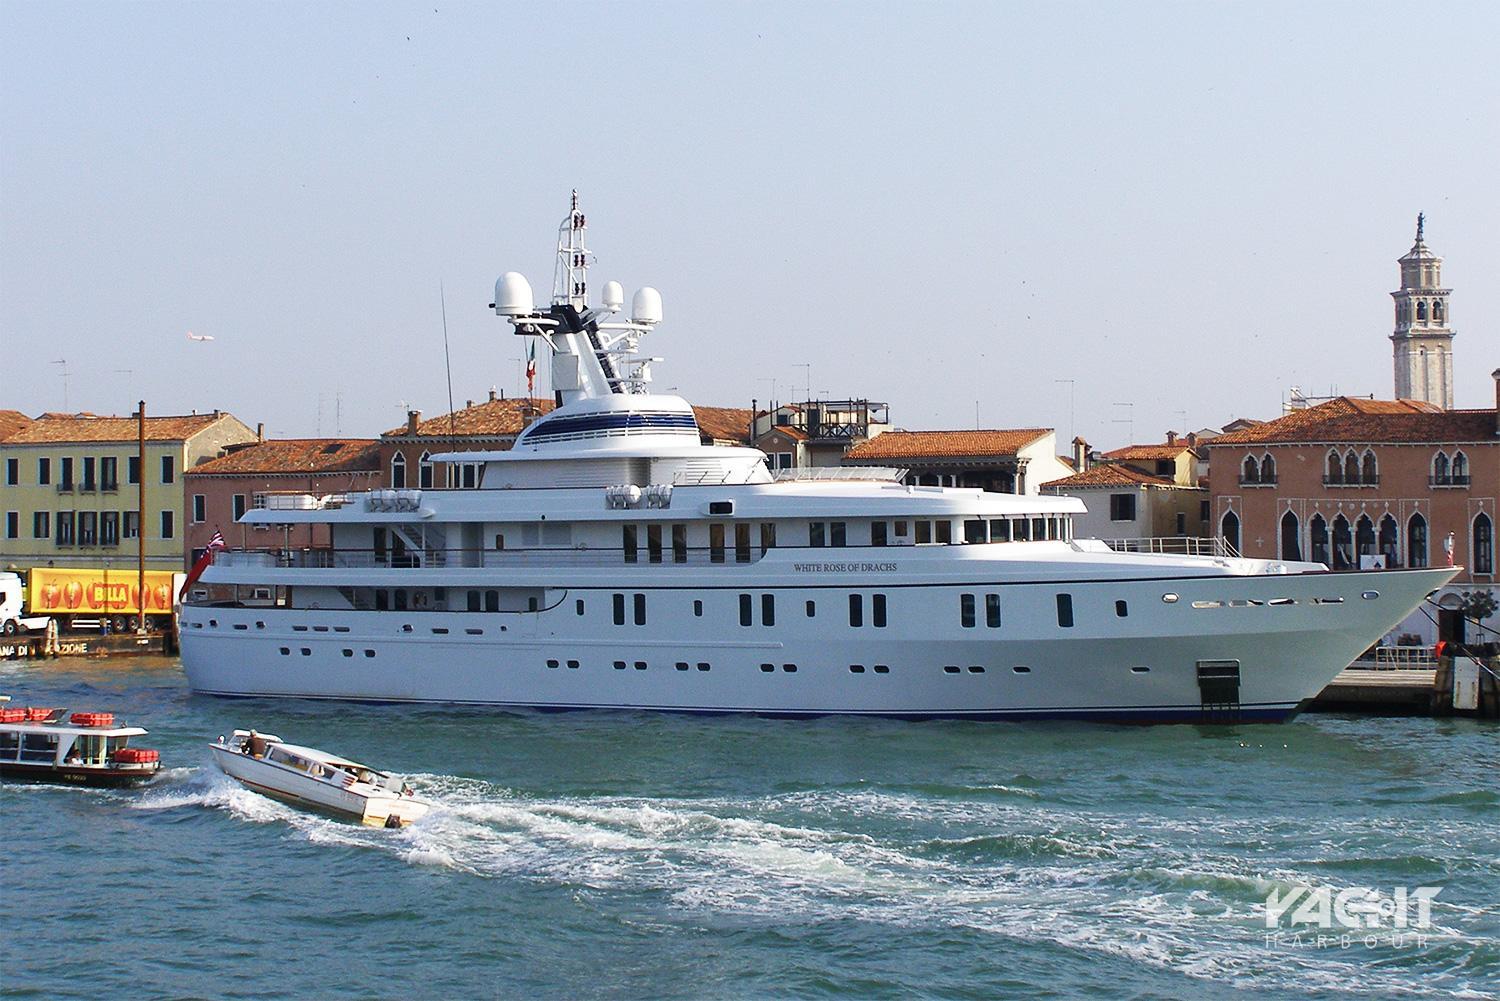 yacht white rose of drachs besitzer